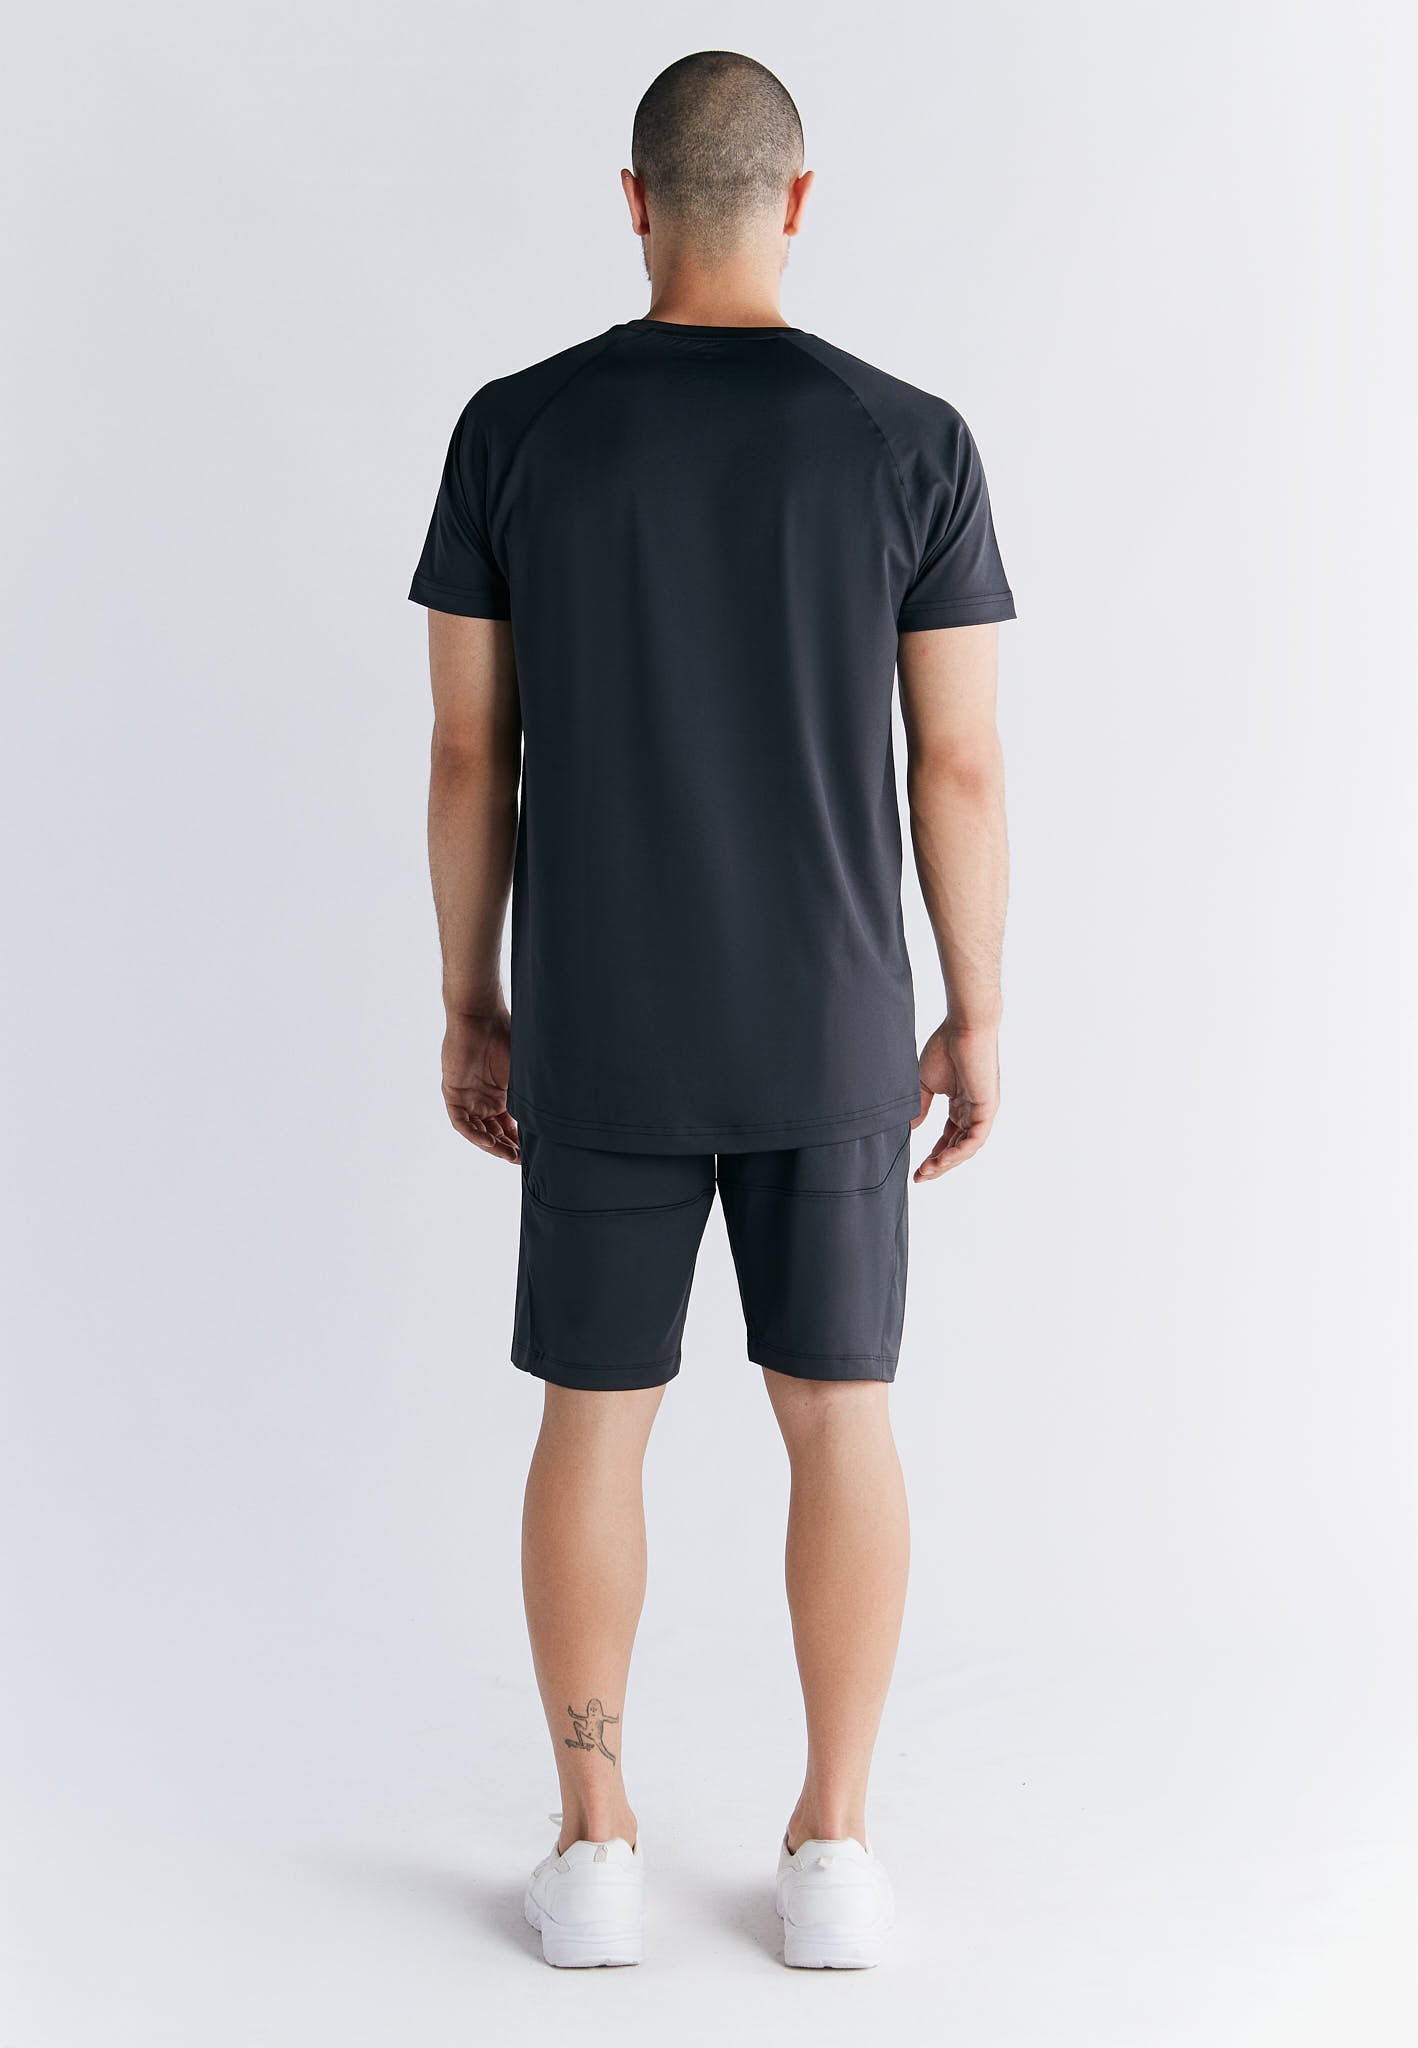 T2101-01 | Active Herren T-Shirt recyclet